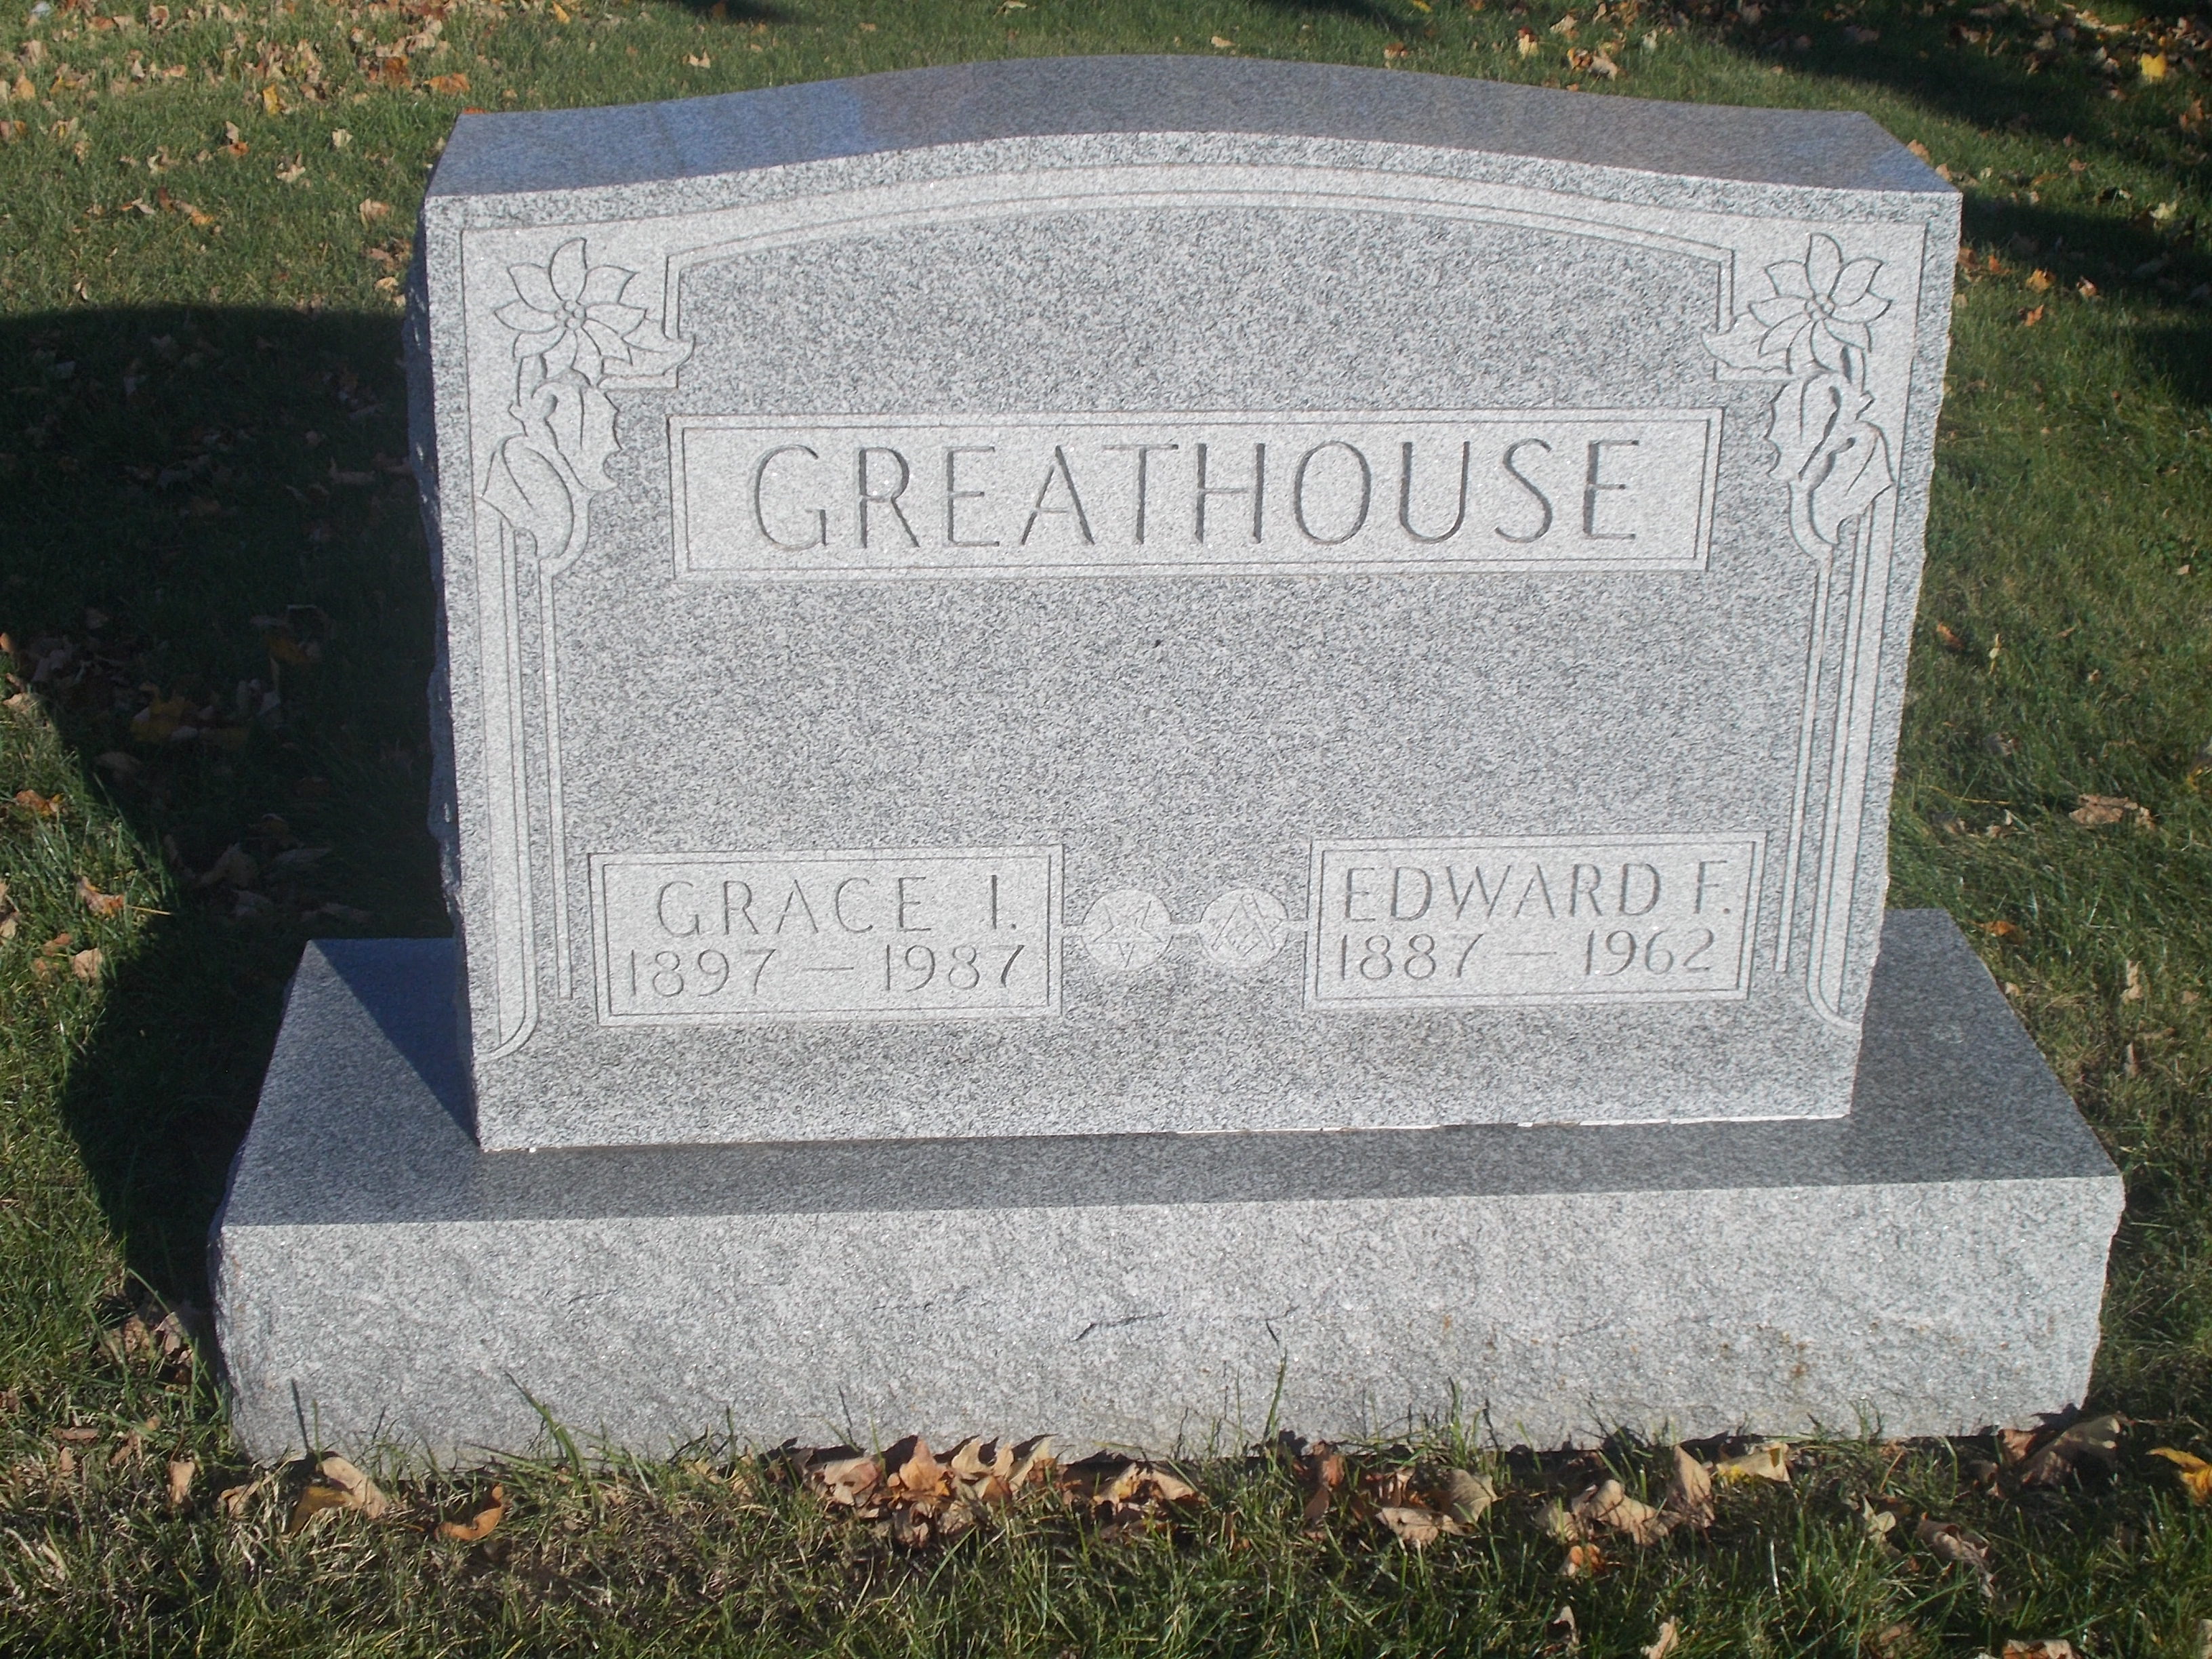 Edward Frederick "Fred" Greathouse